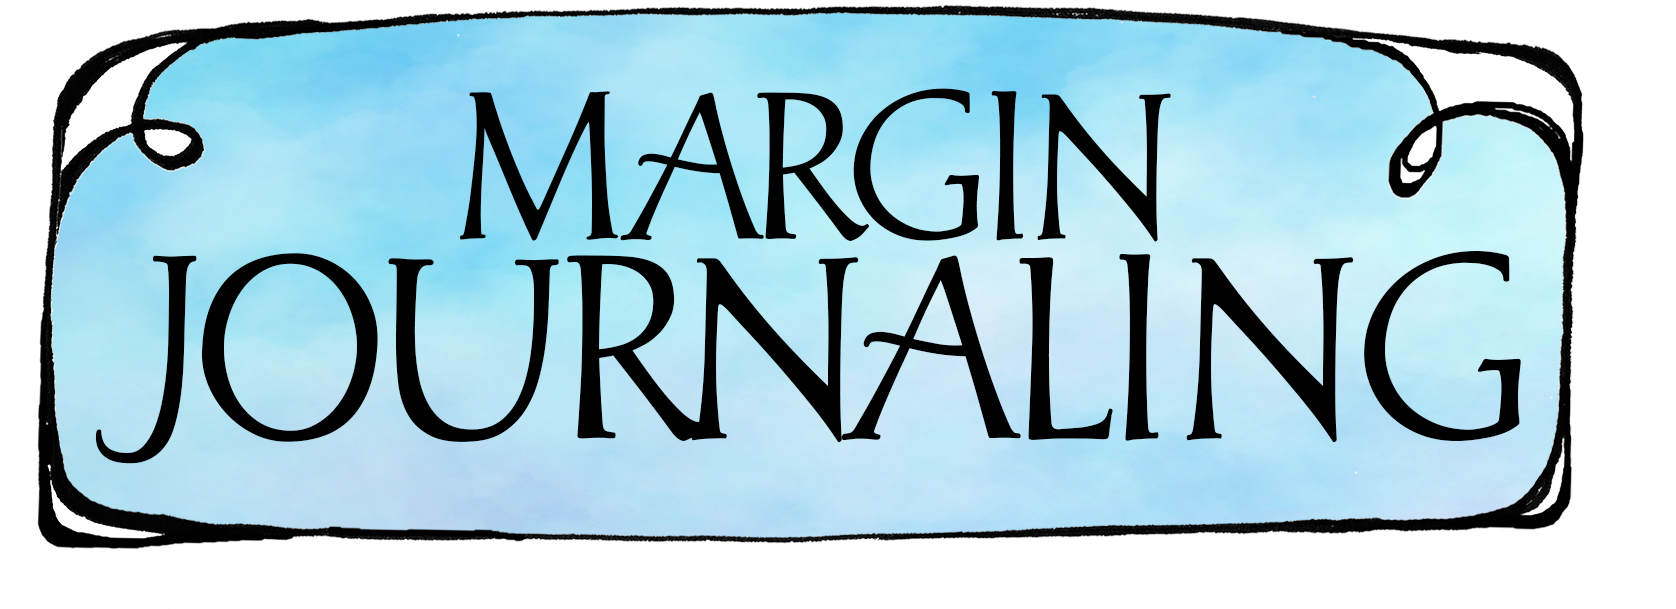 Margin Journaling